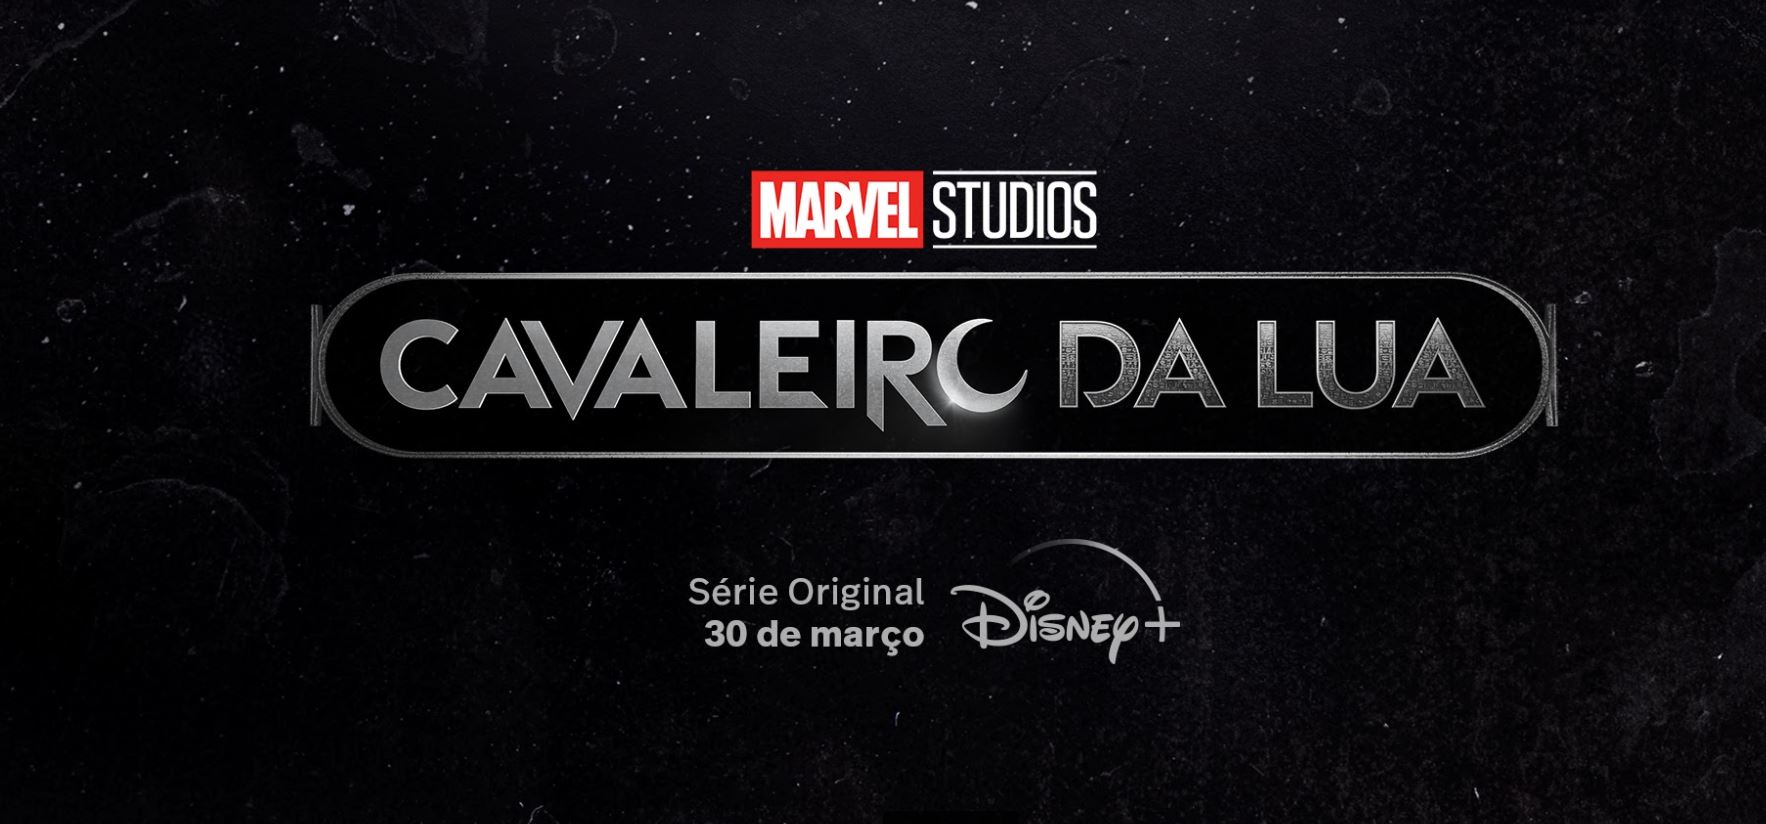 Disney+ | Cavaleiro da Lua recebe seu primeiro trailer e pôster oficial